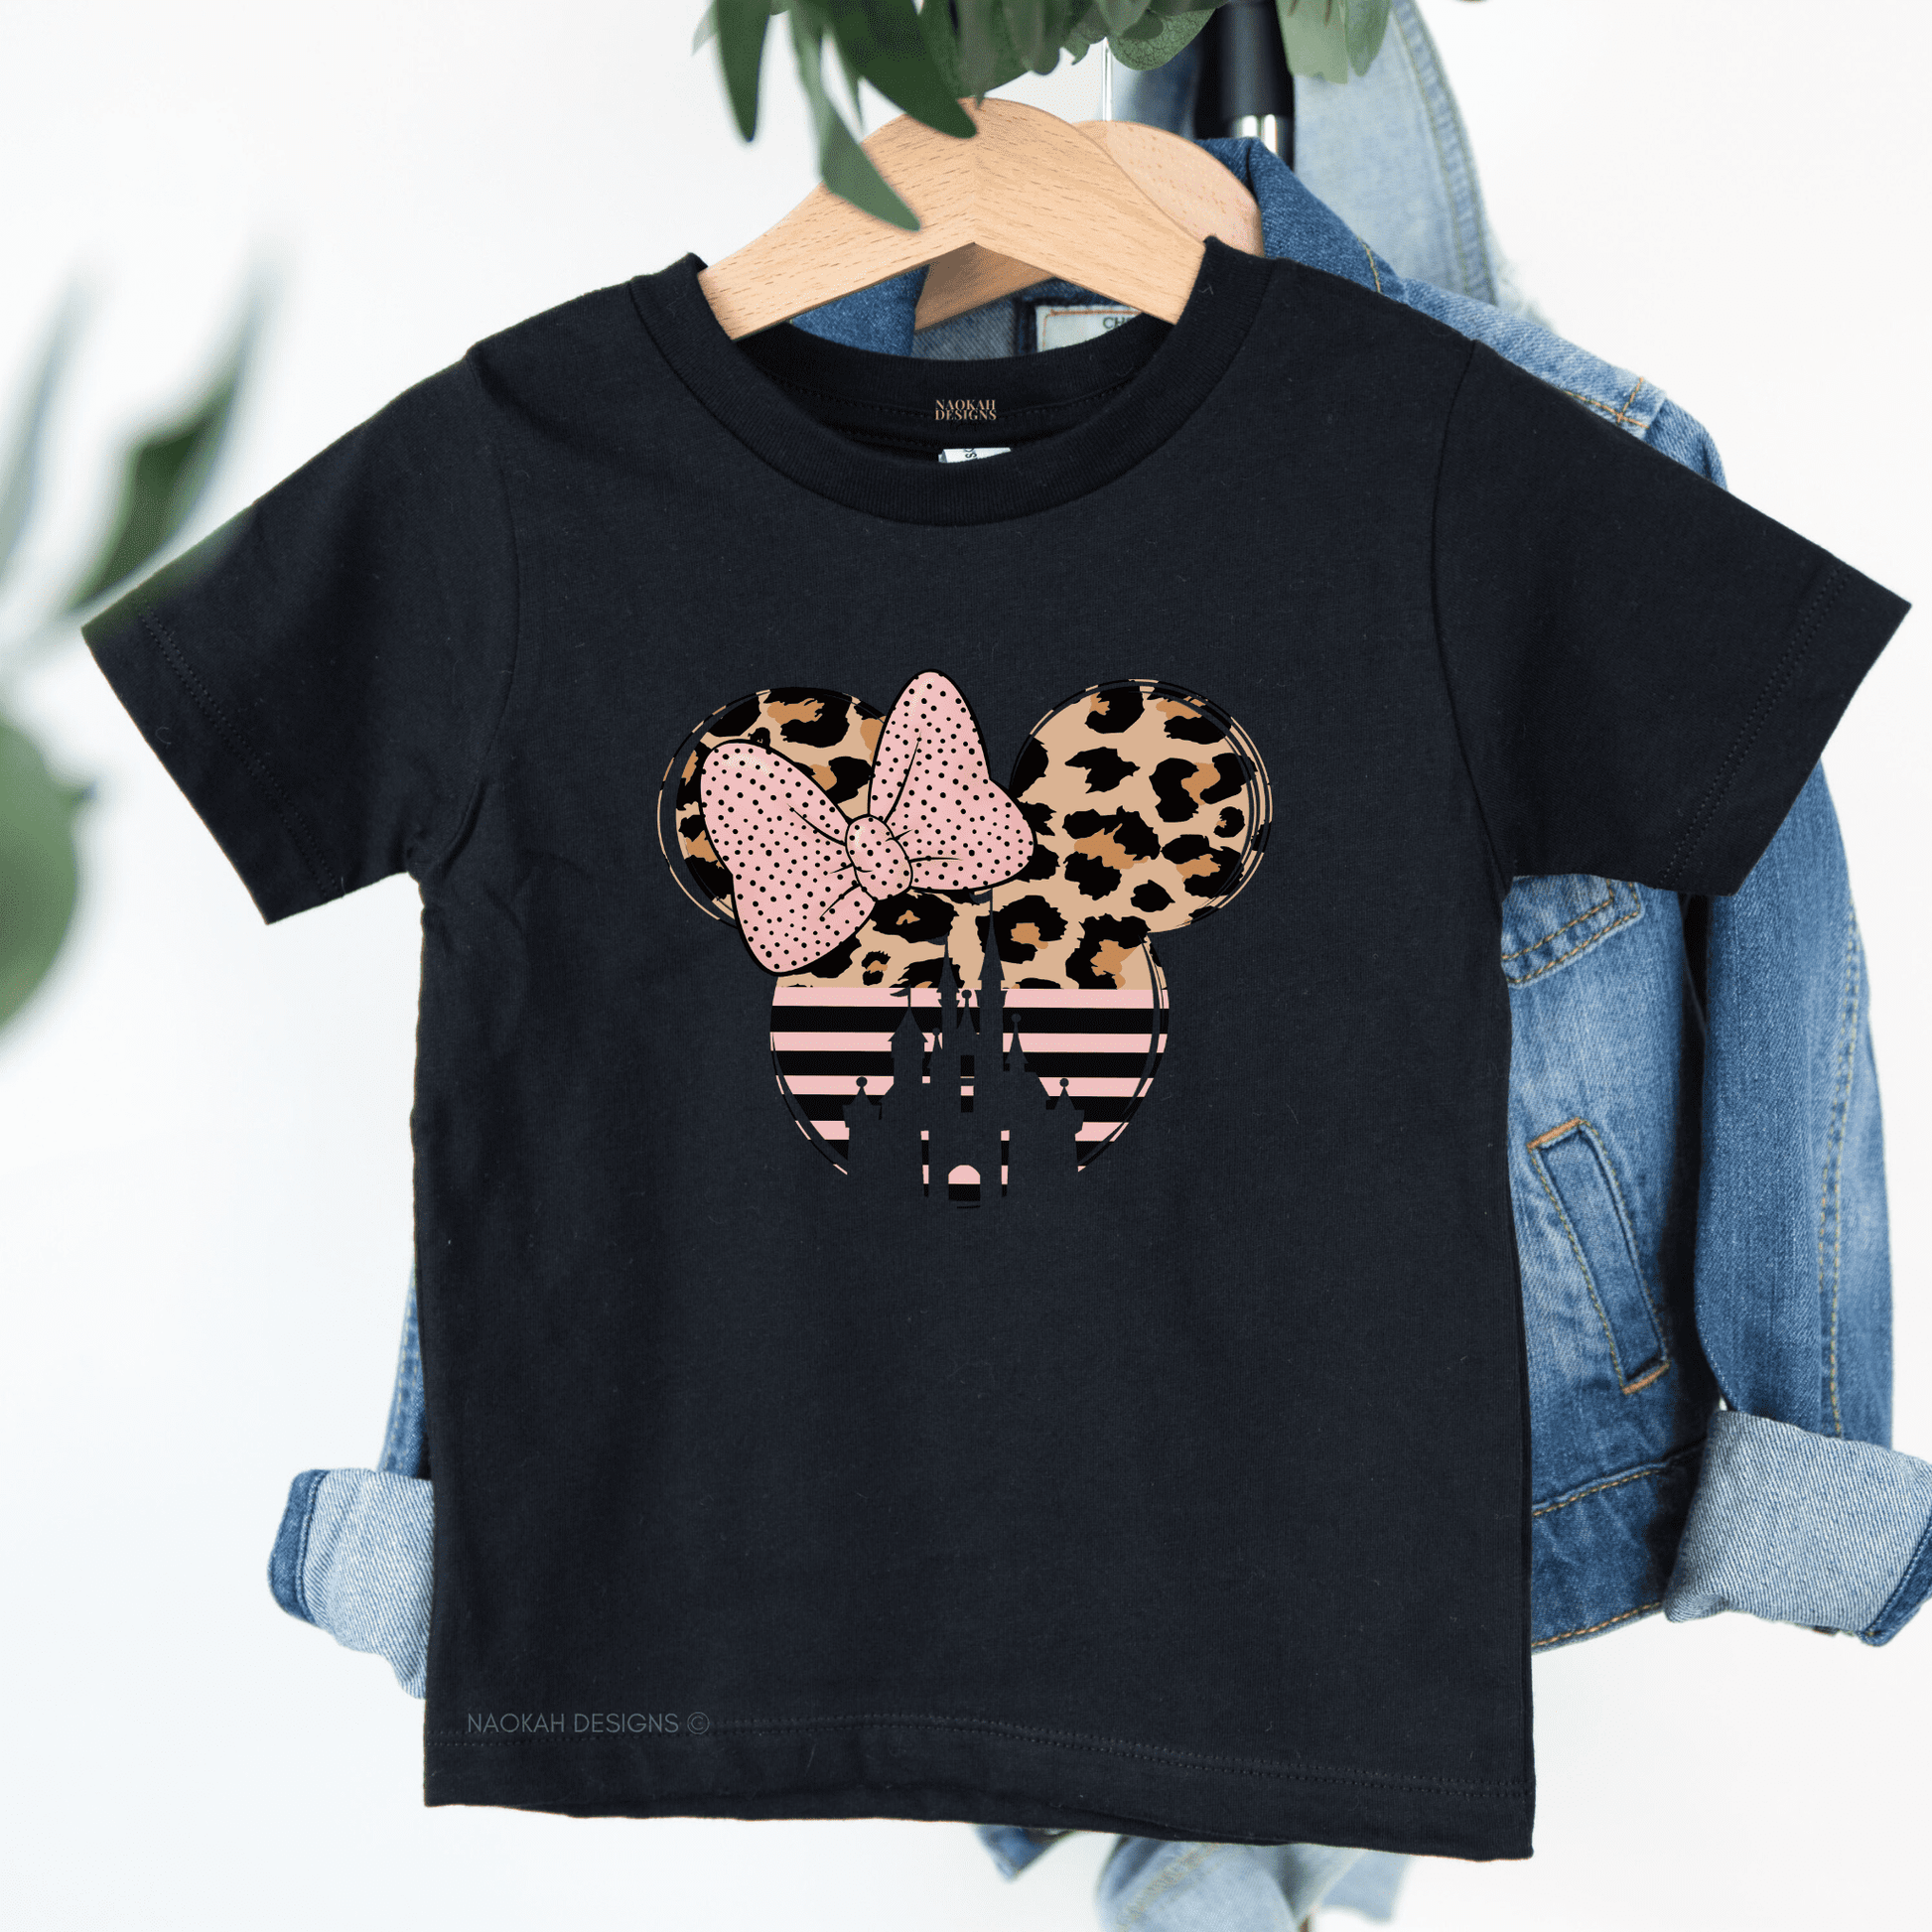 Toddler Minnie Shirt, Kids Minnie Leopard Shirt, Youth Minnie Shirt, Magical Vacation Kids Shirt, Minnie Kids Shirt, kids disney vacation shirt